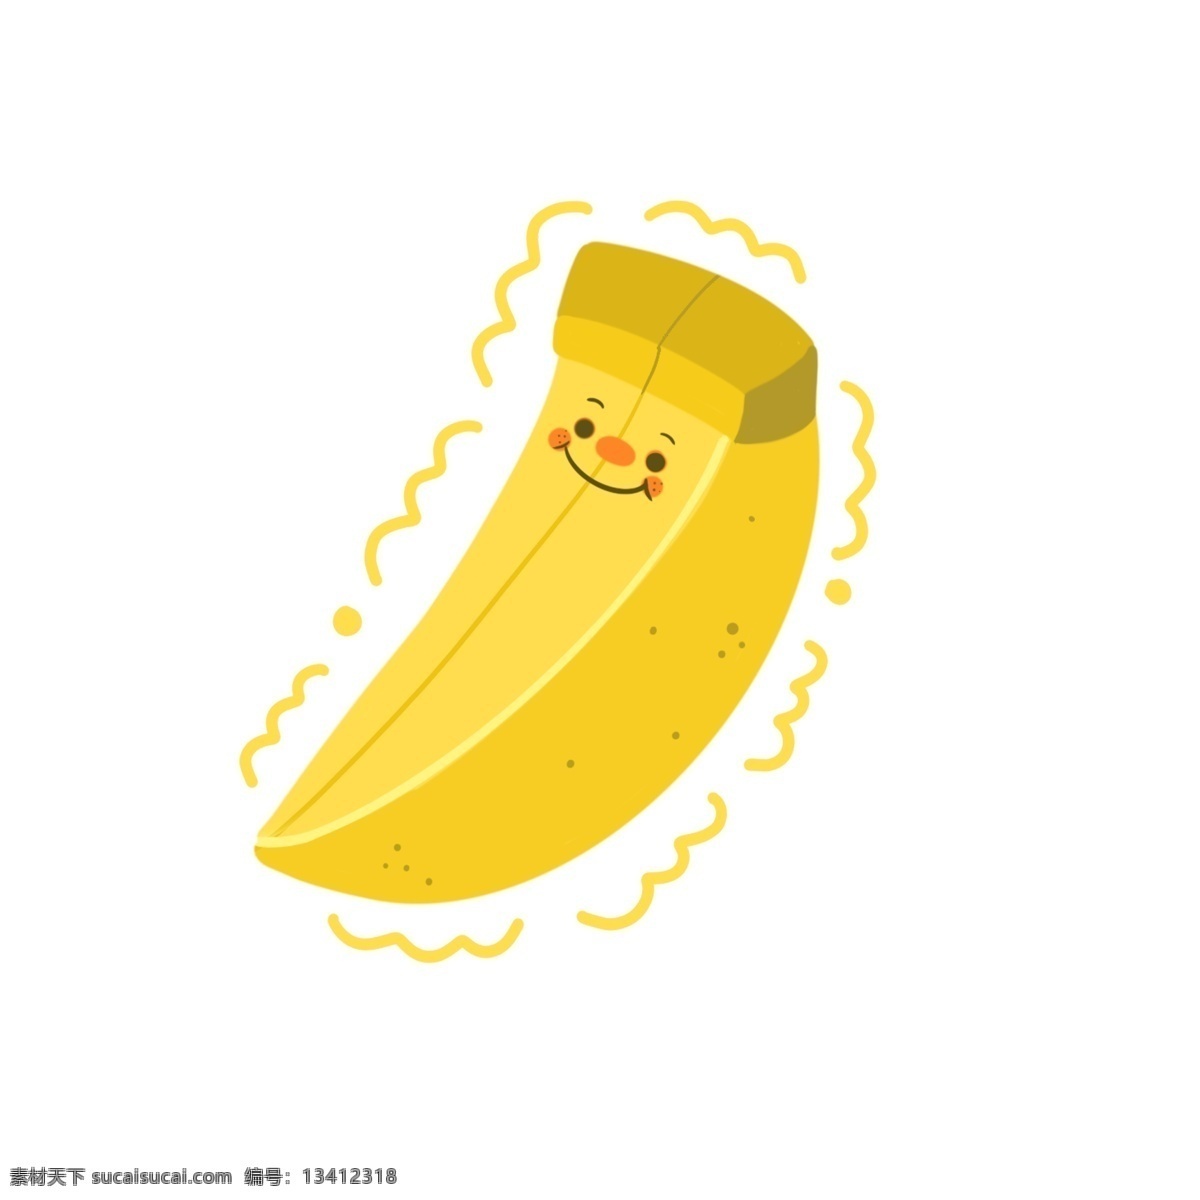 笑脸 卡通 香蕉 形象 简约 水果 可爱